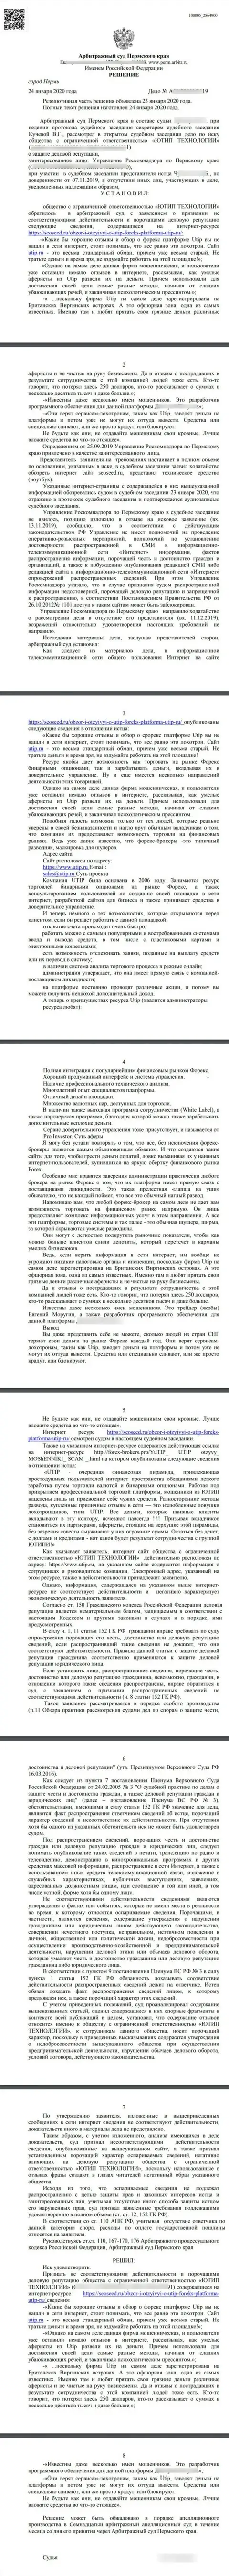 Исковое заявление мошенников ЮТИП Ру в адрес сайта seoseed ru, который был удовлетворён самым гуманным судом в мире